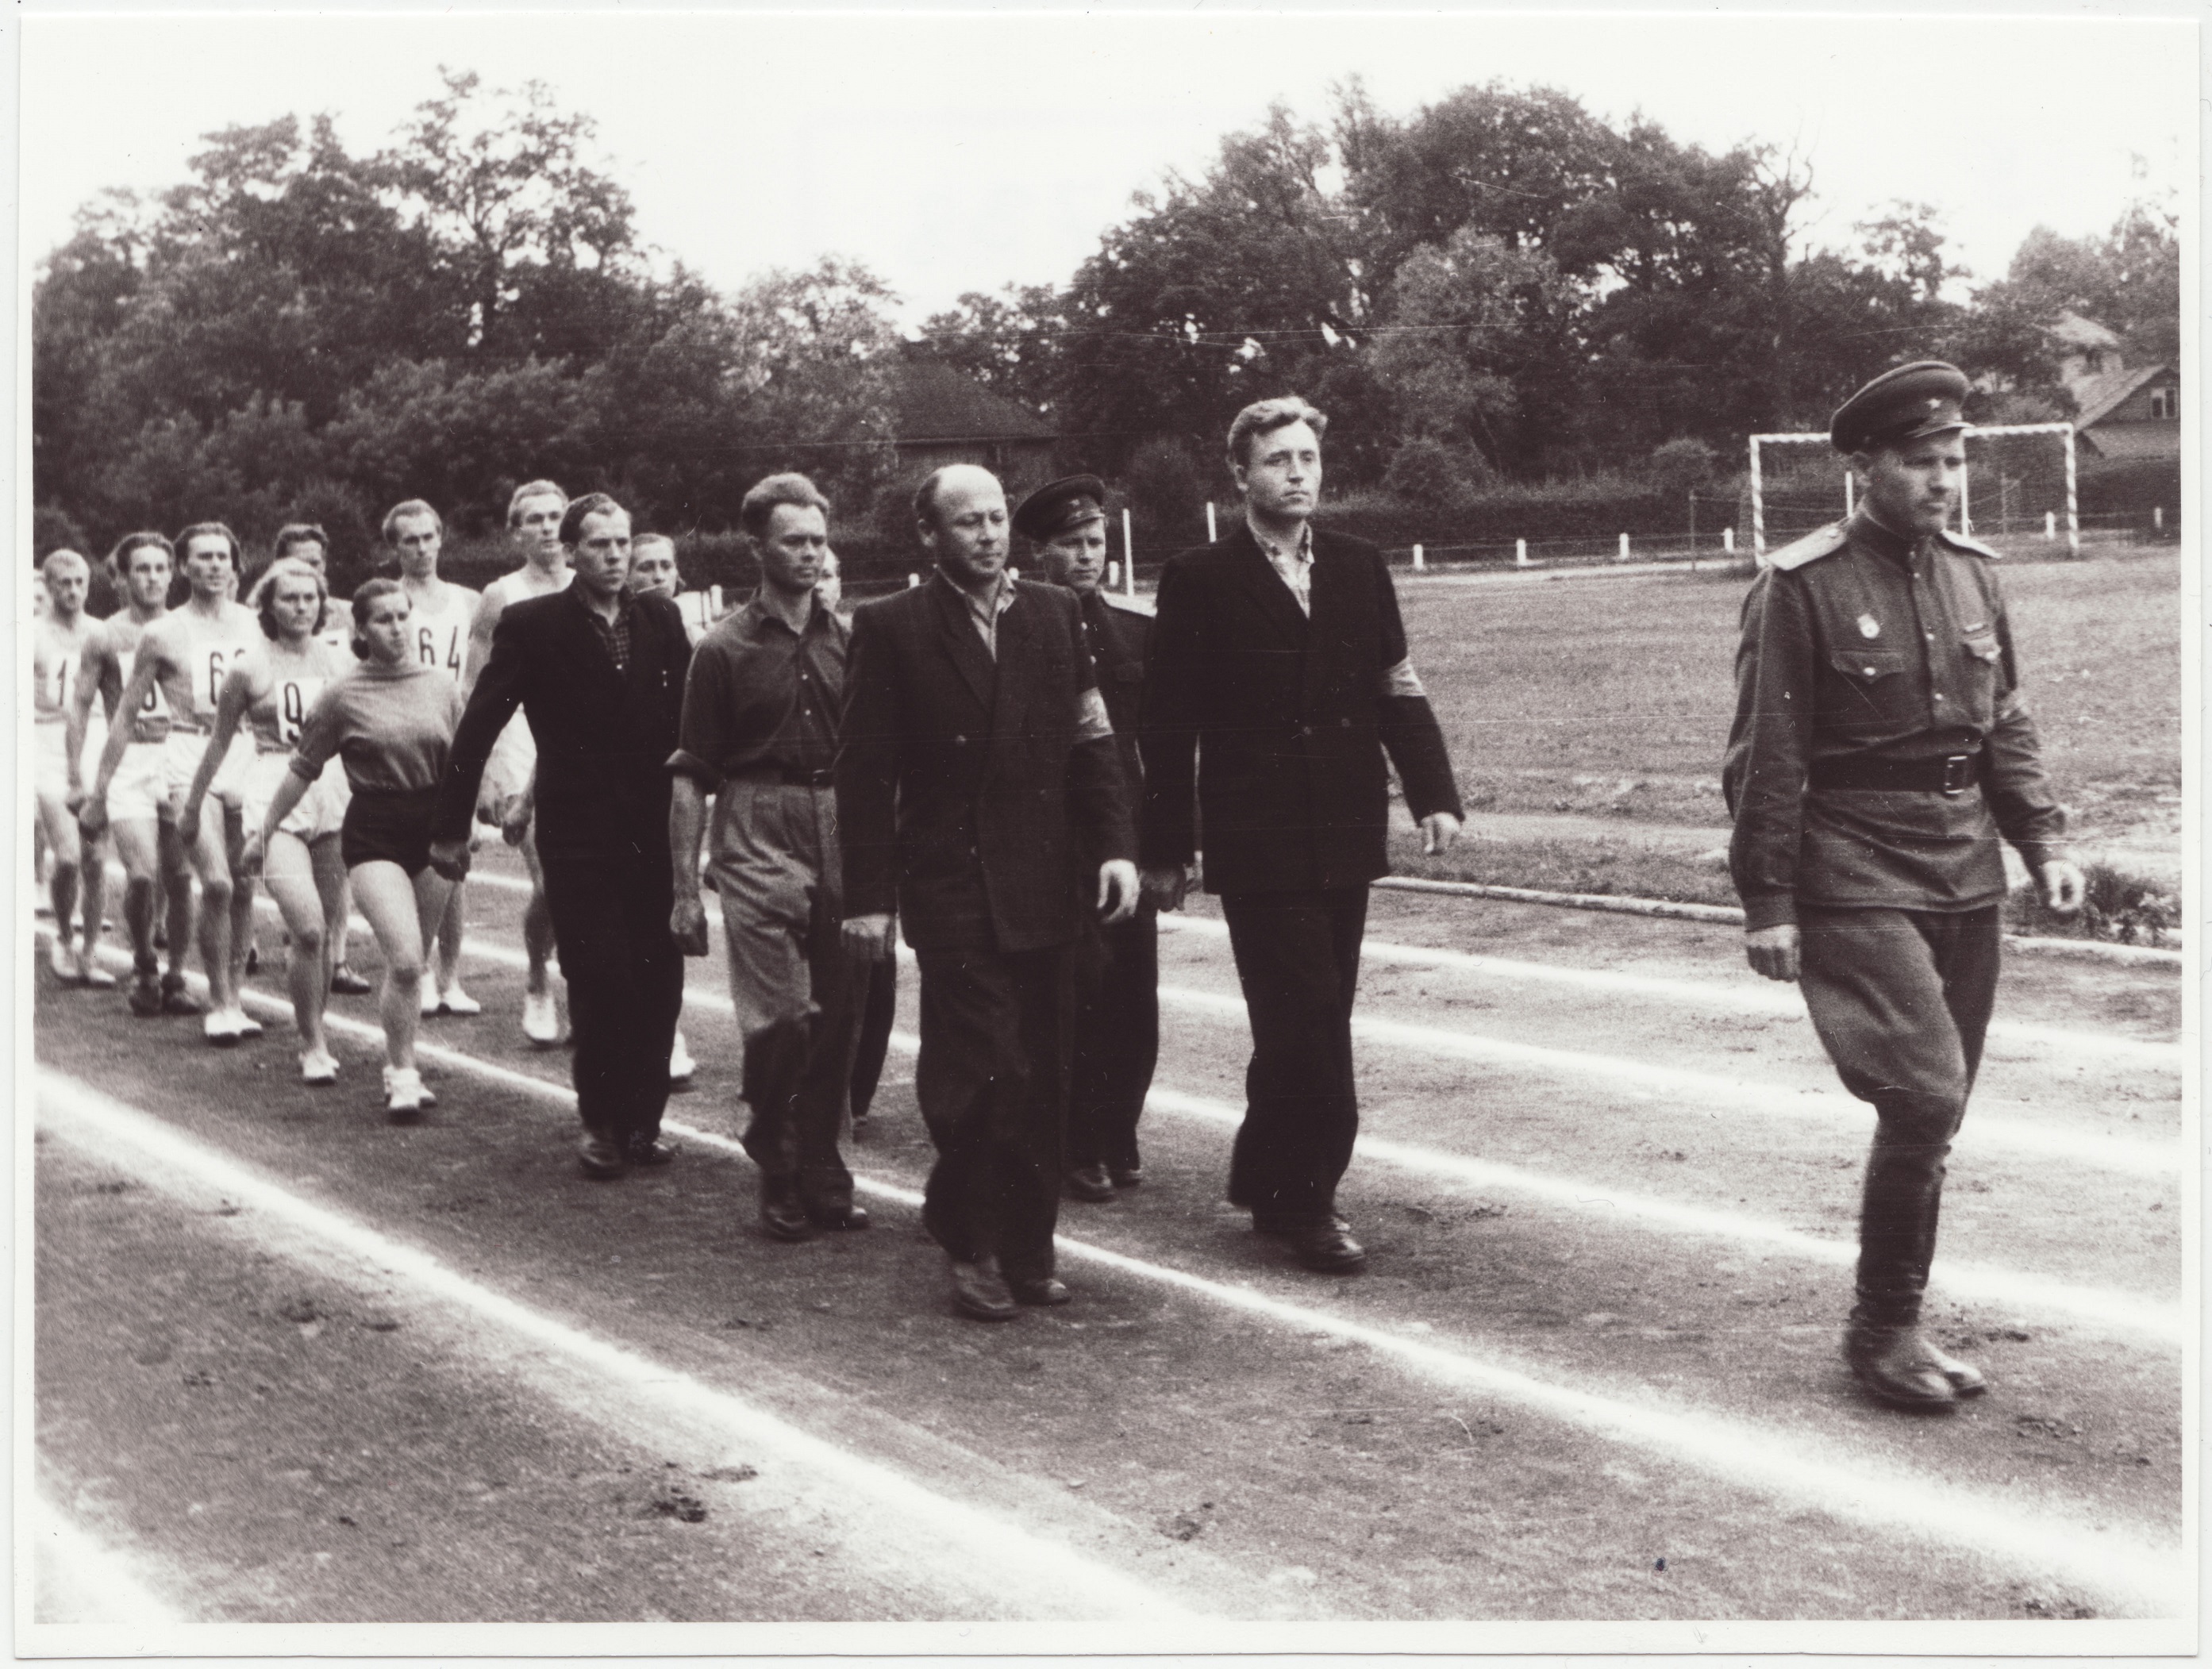 Tallinna sõjaväestatud tuletõrjekomandode kergejõustiku võistluste võitjate autasustamine Dünamo staadionil: kohtunikud ja võistlejad marssimas, 1953.a.